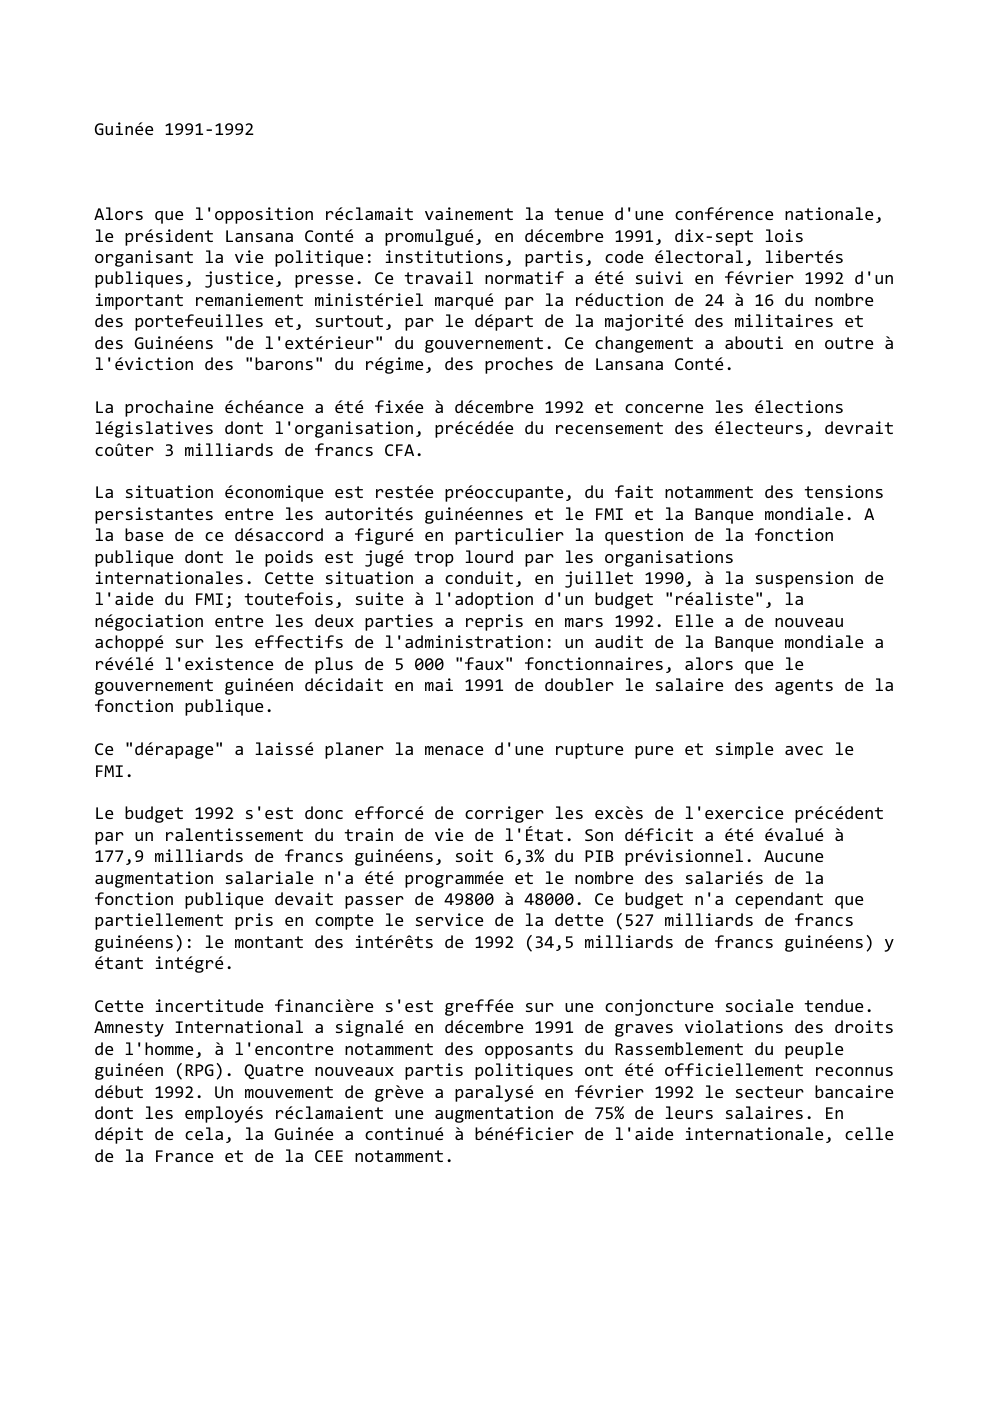 Prévisualisation du document Guinée 1991-1992

Alors que l'opposition réclamait vainement la tenue d'une conférence nationale,
le président Lansana Conté a promulgué, en décembre...